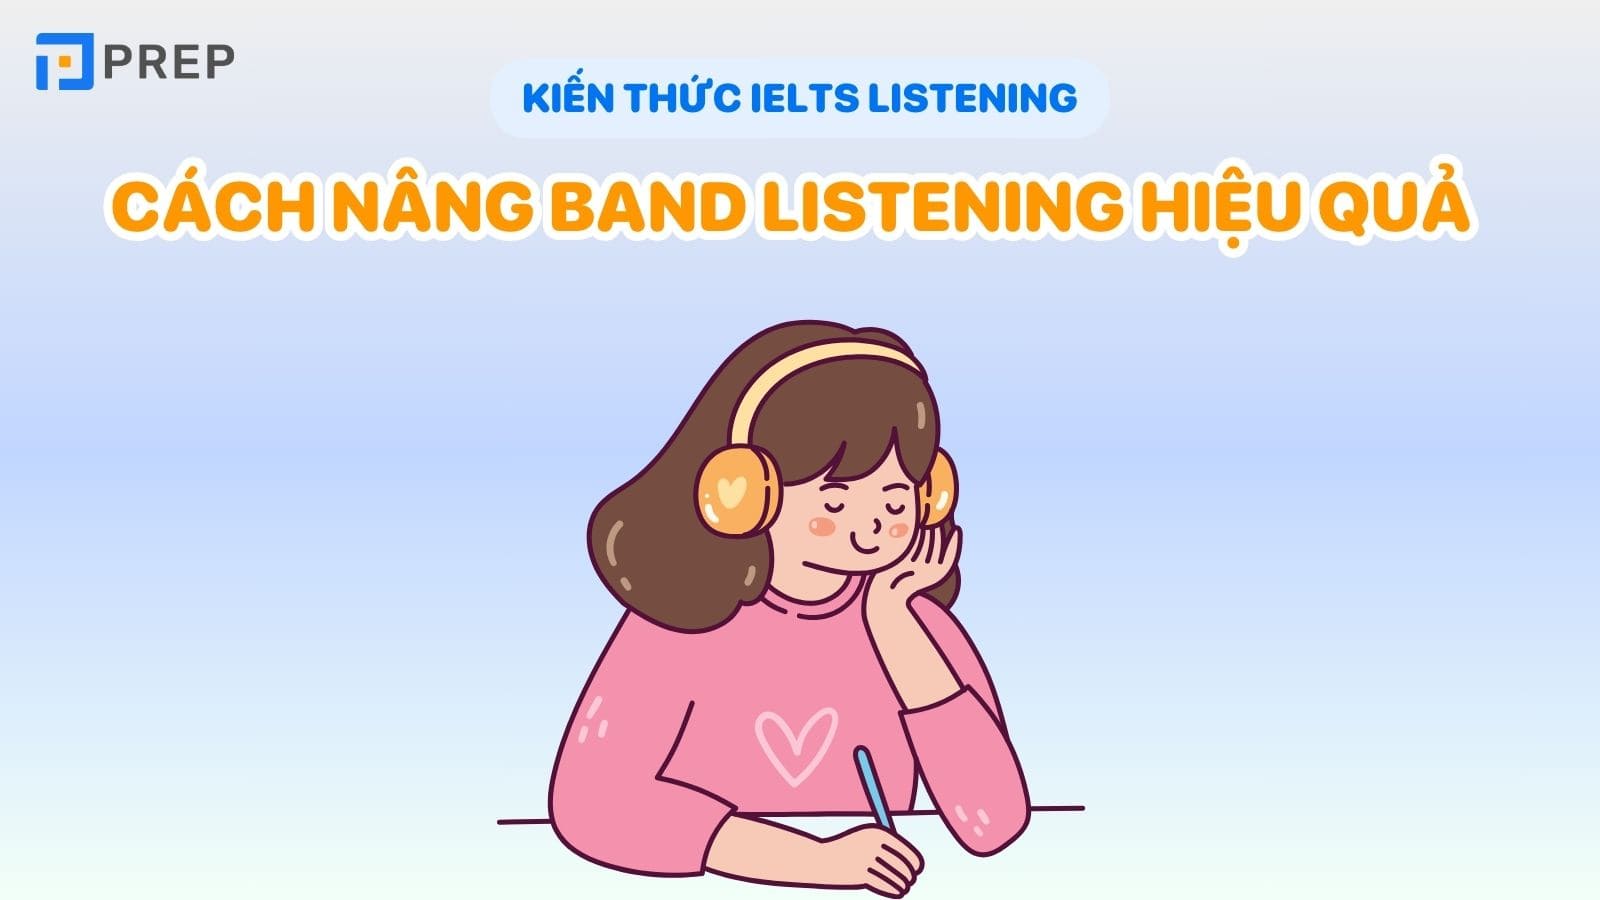 cach-nang-band-listening-hieu-qua.jpg